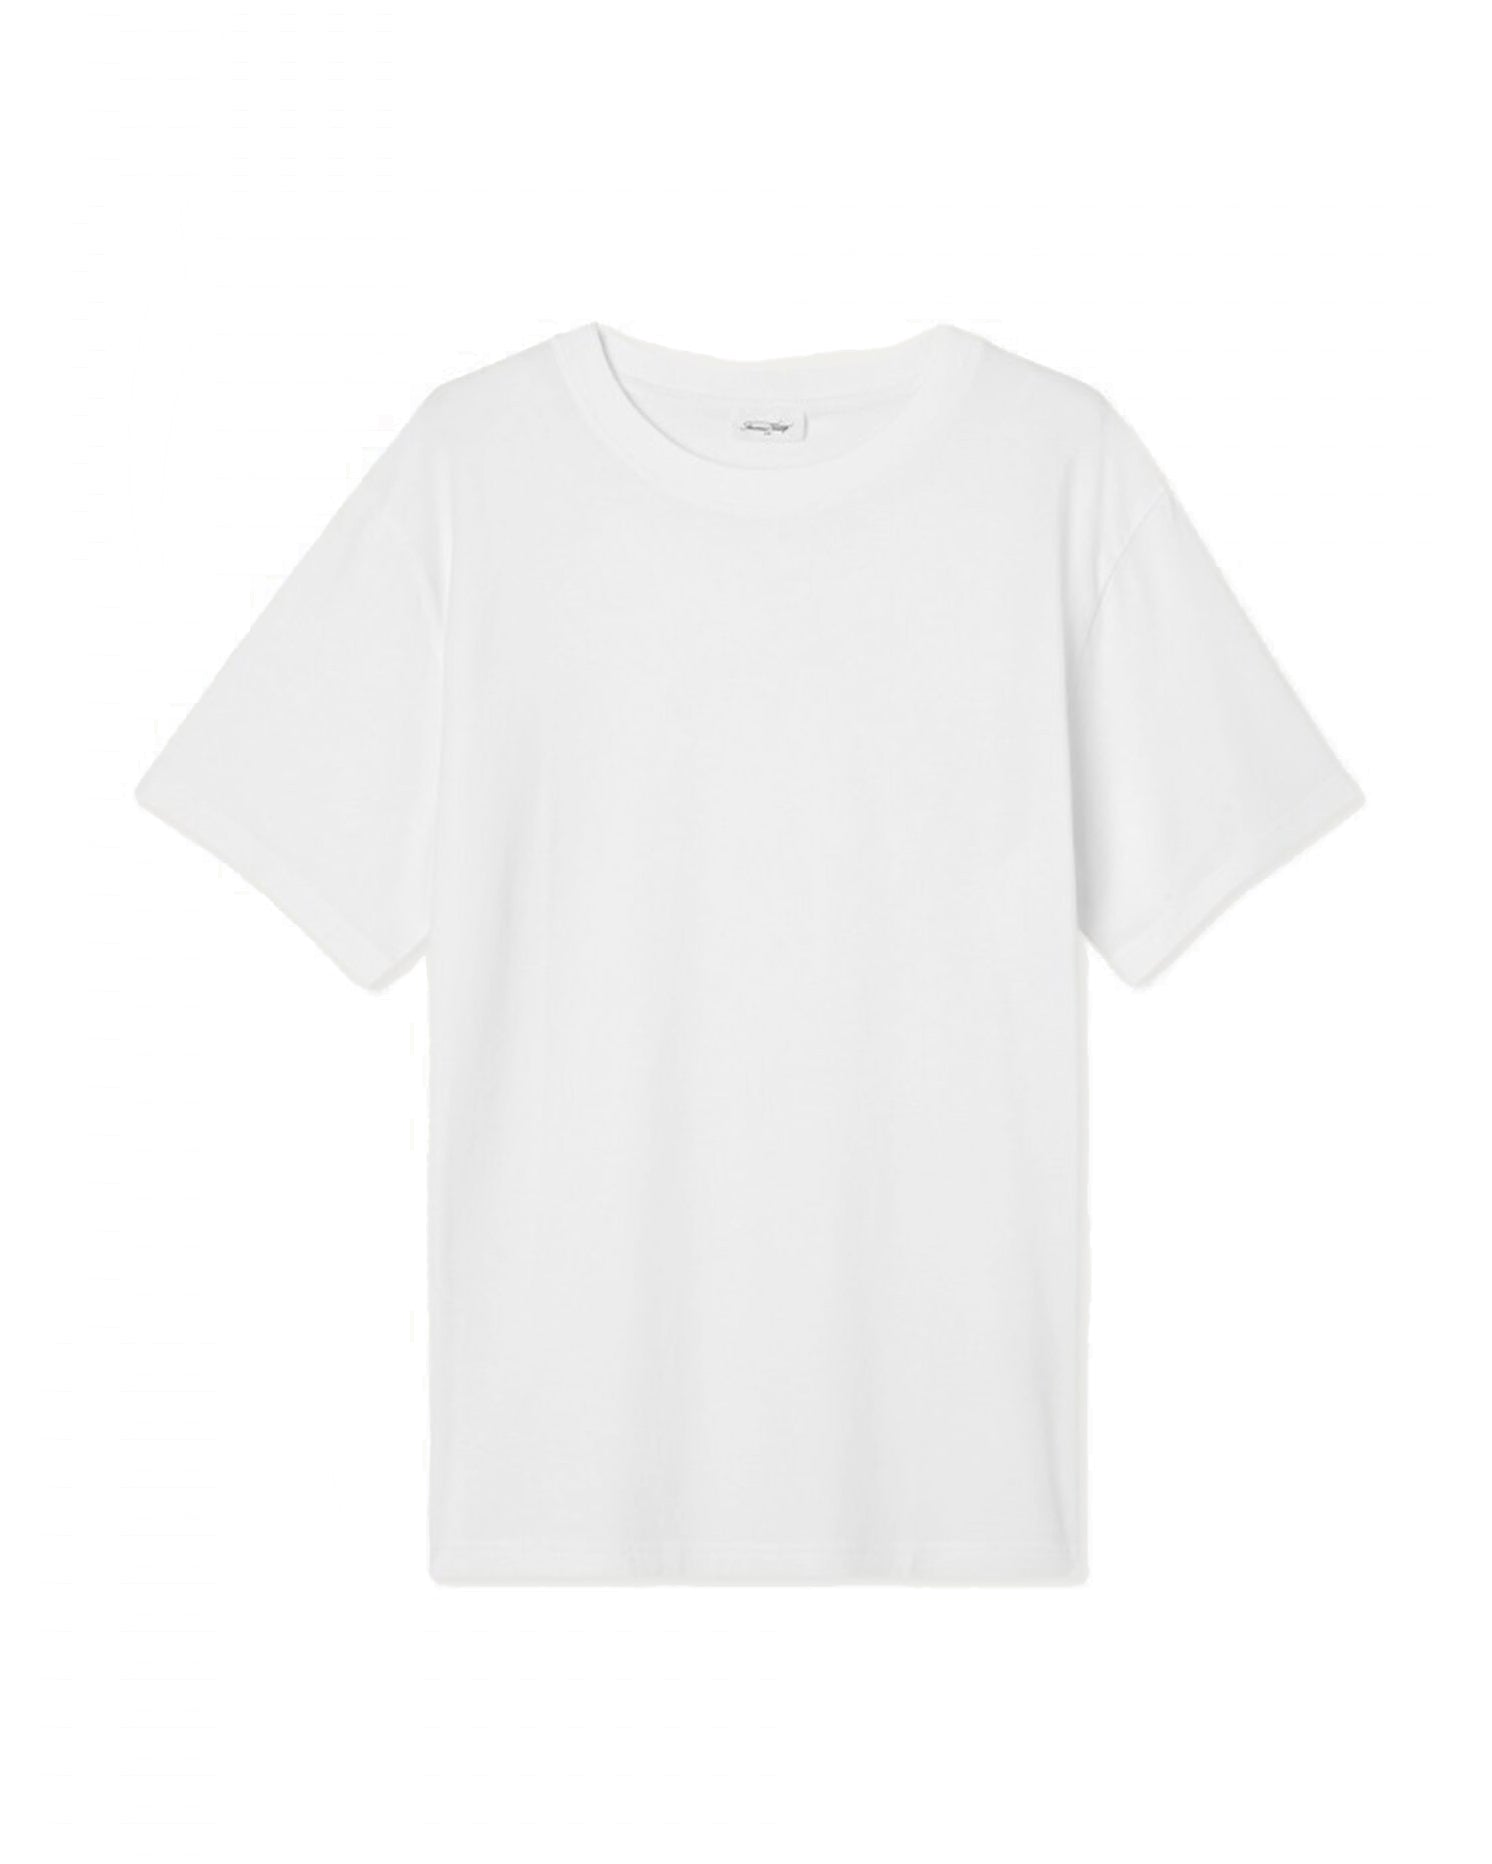 T-shirt Vupaville - Blanc